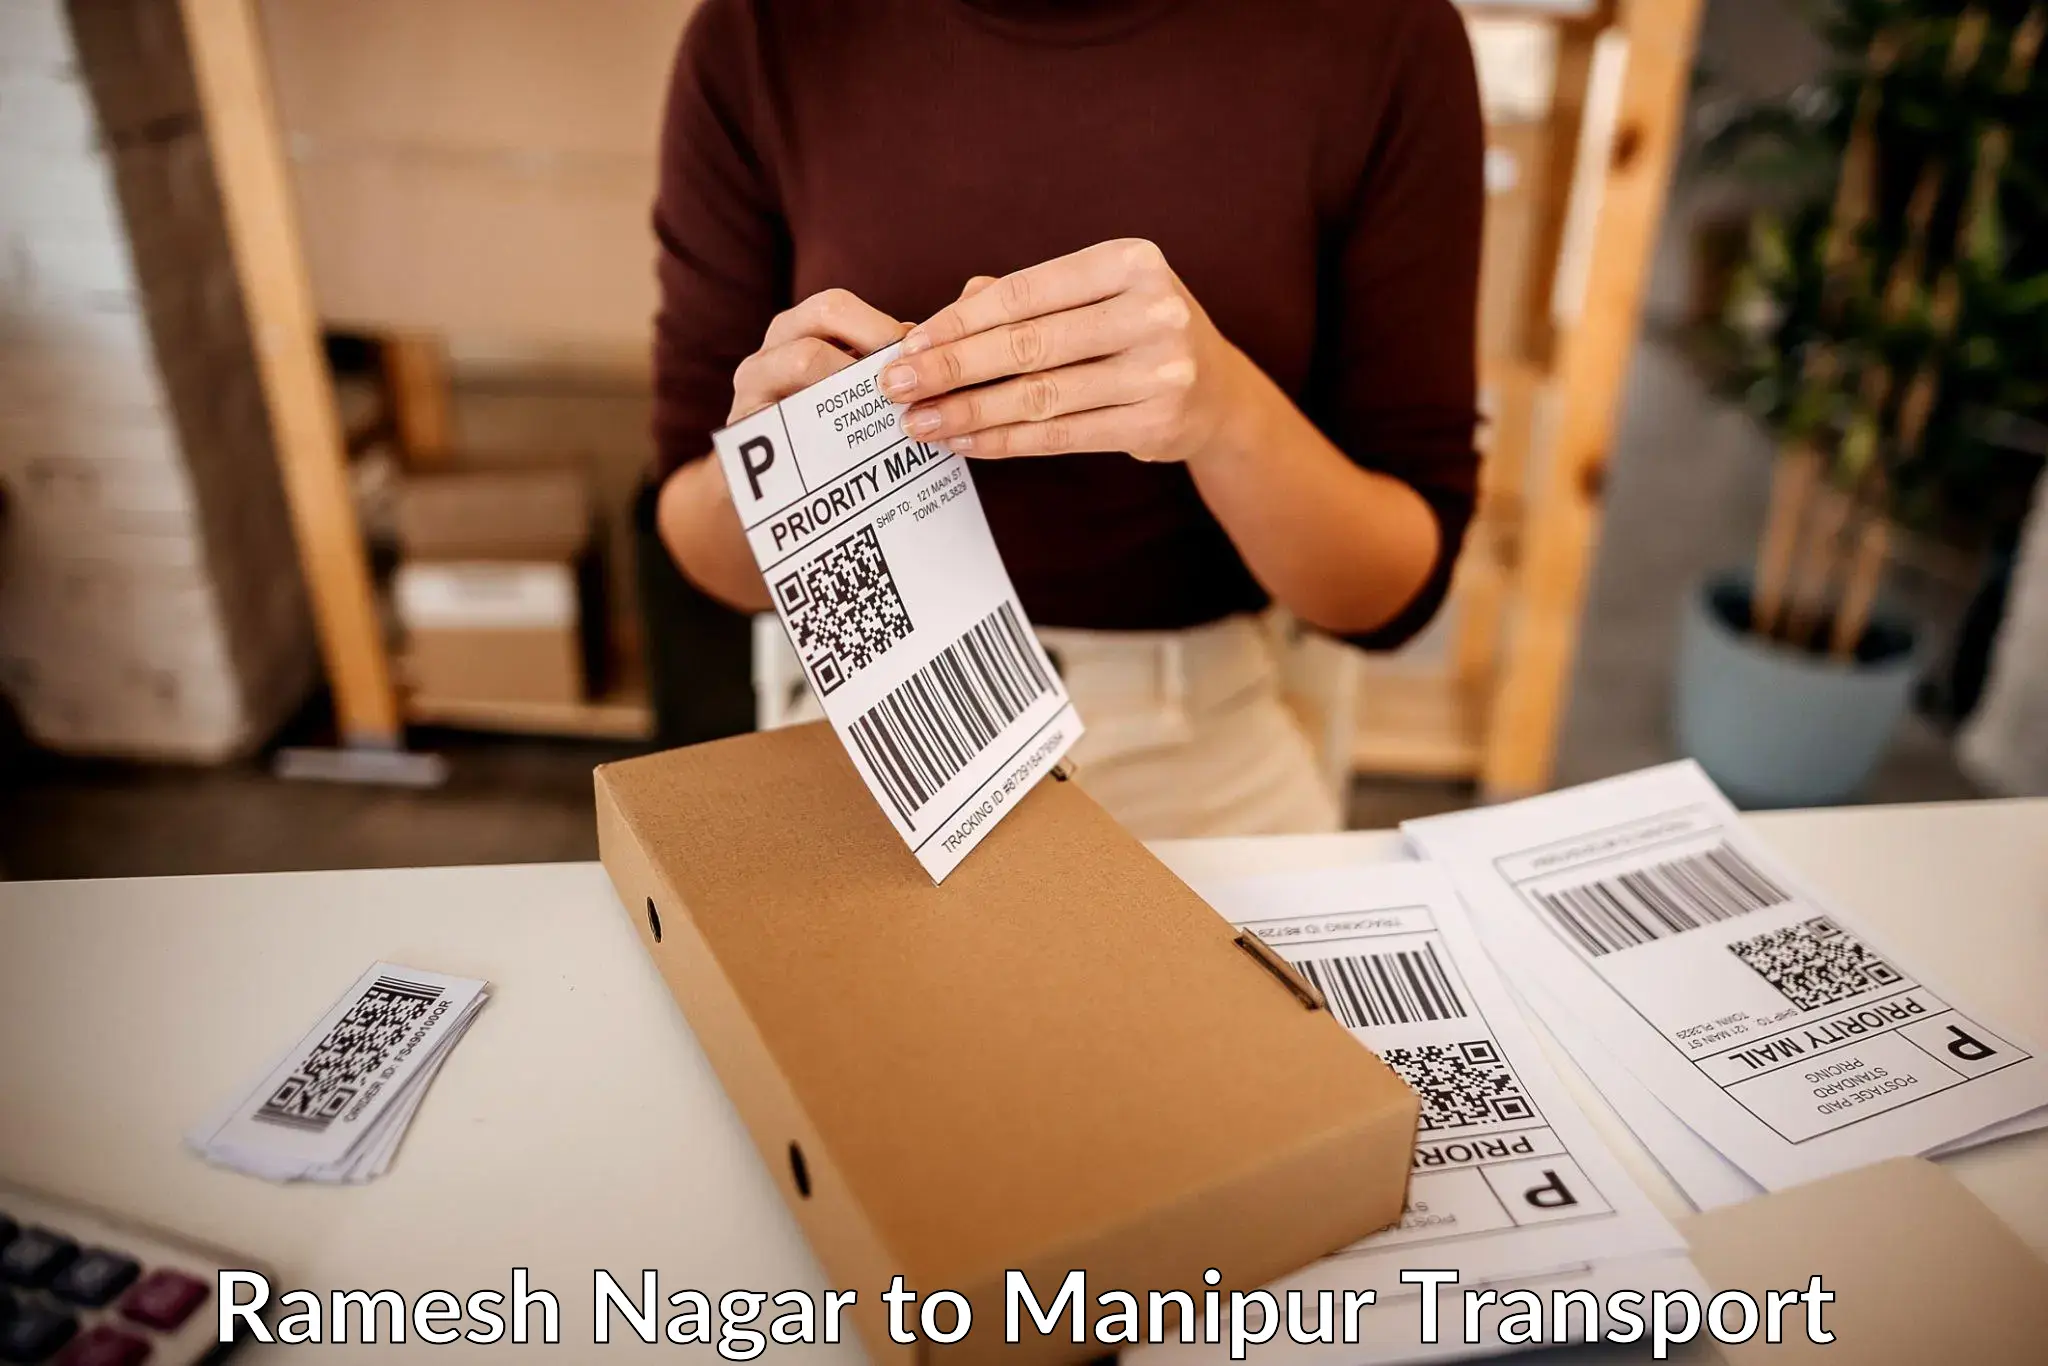 Furniture transport service Ramesh Nagar to NIT Manipur